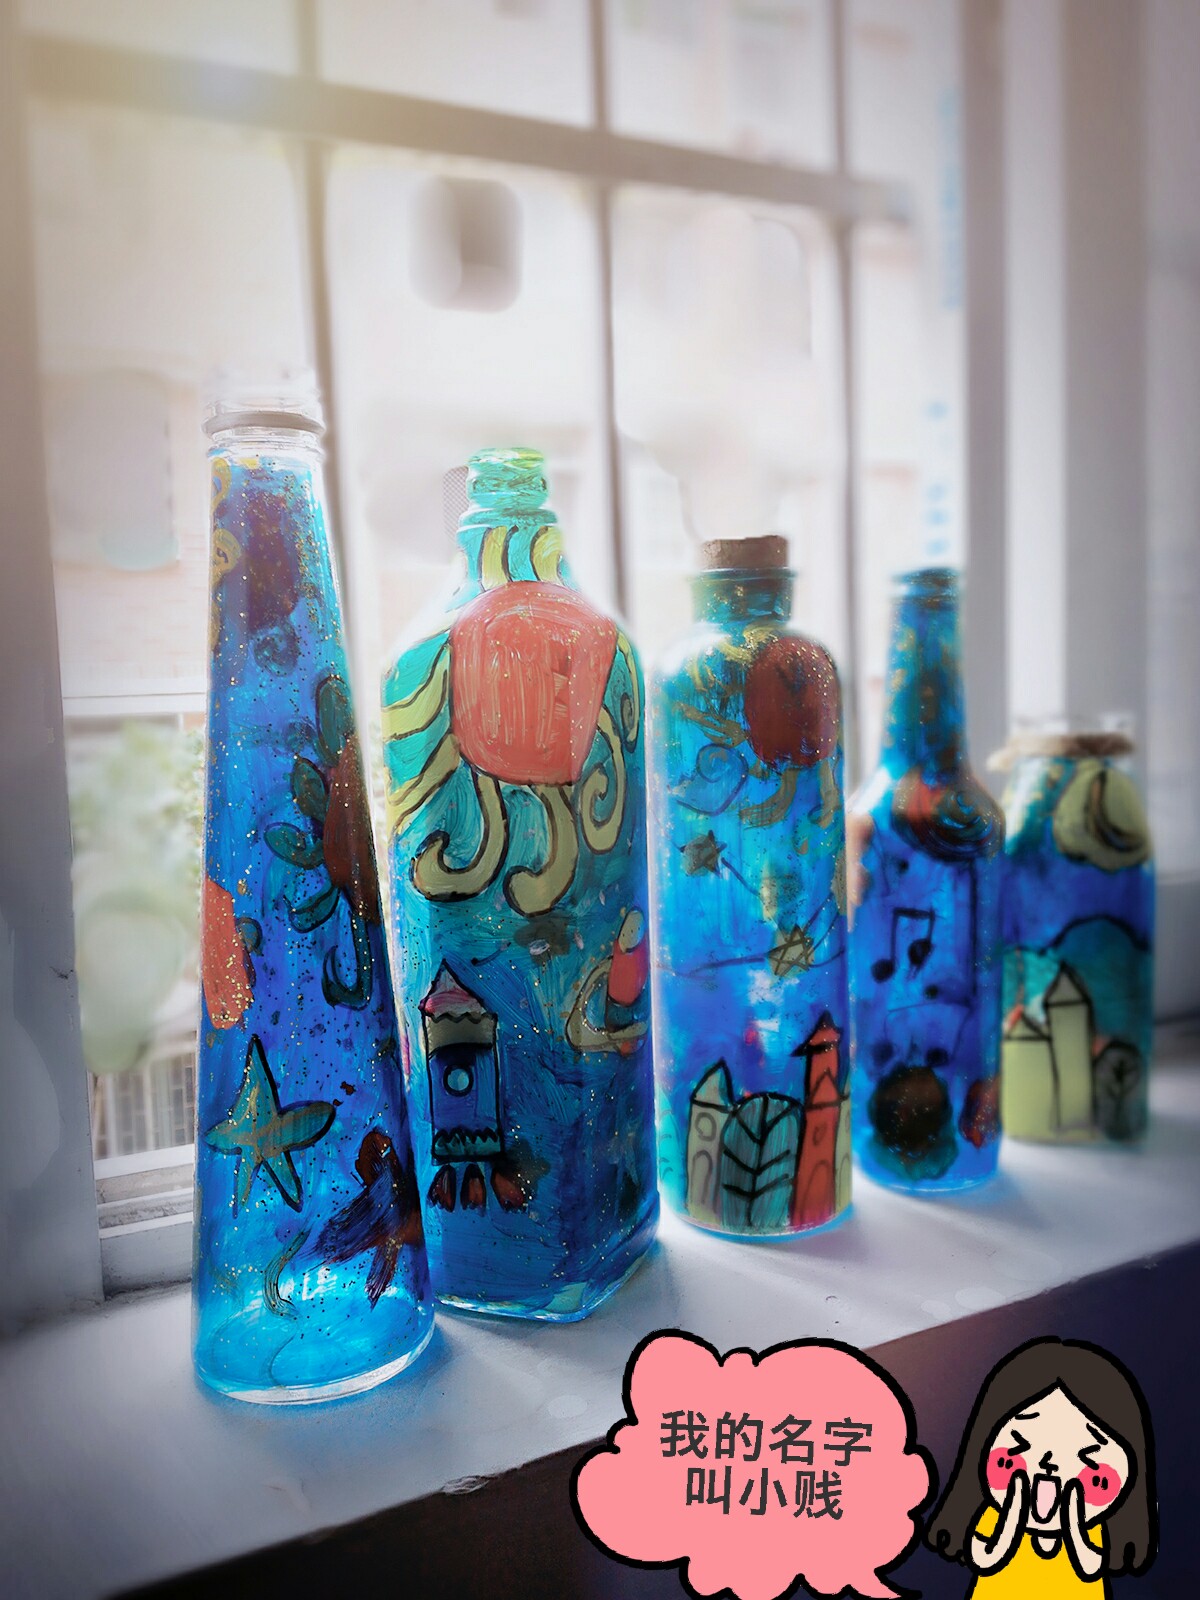 儿童手工制作,家居创意工坊,海洋系玻璃瓶